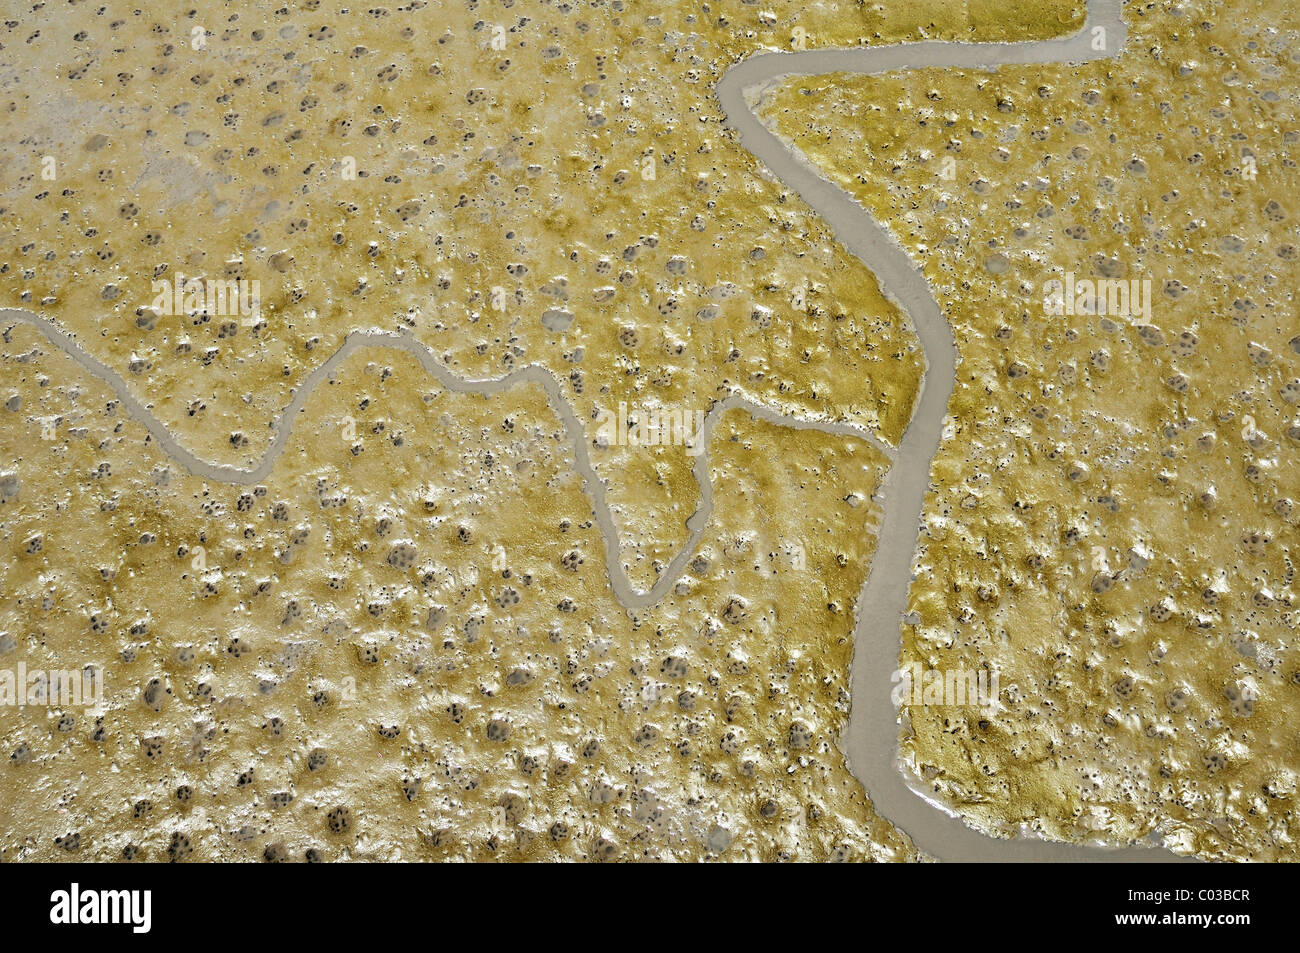 Tierspuren und Entwässerungsrinnen im Wattenmeer, Mangroven Küste in Buenaventura, Kolumbien, Südamerika Stockfoto